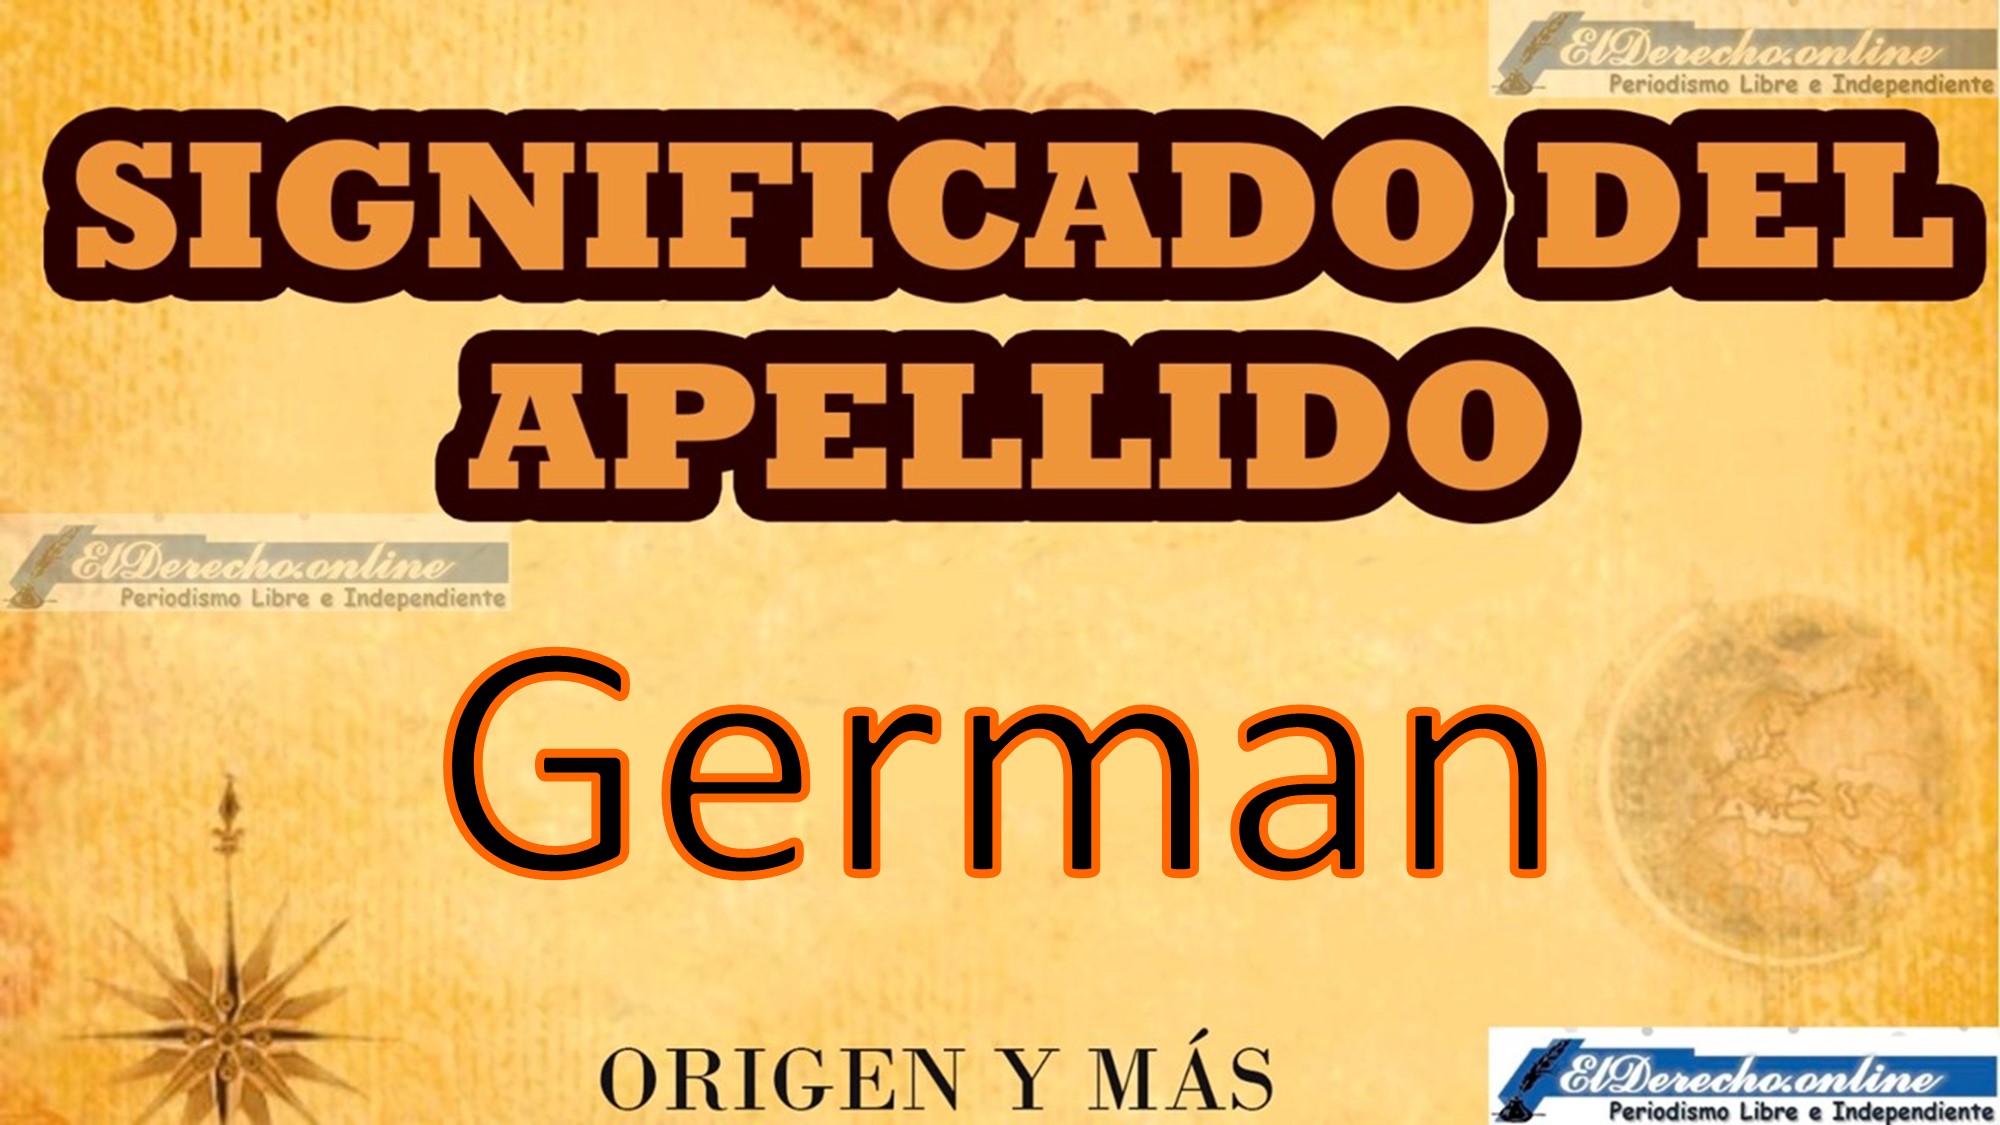 Significado del apellido German, Origen y más